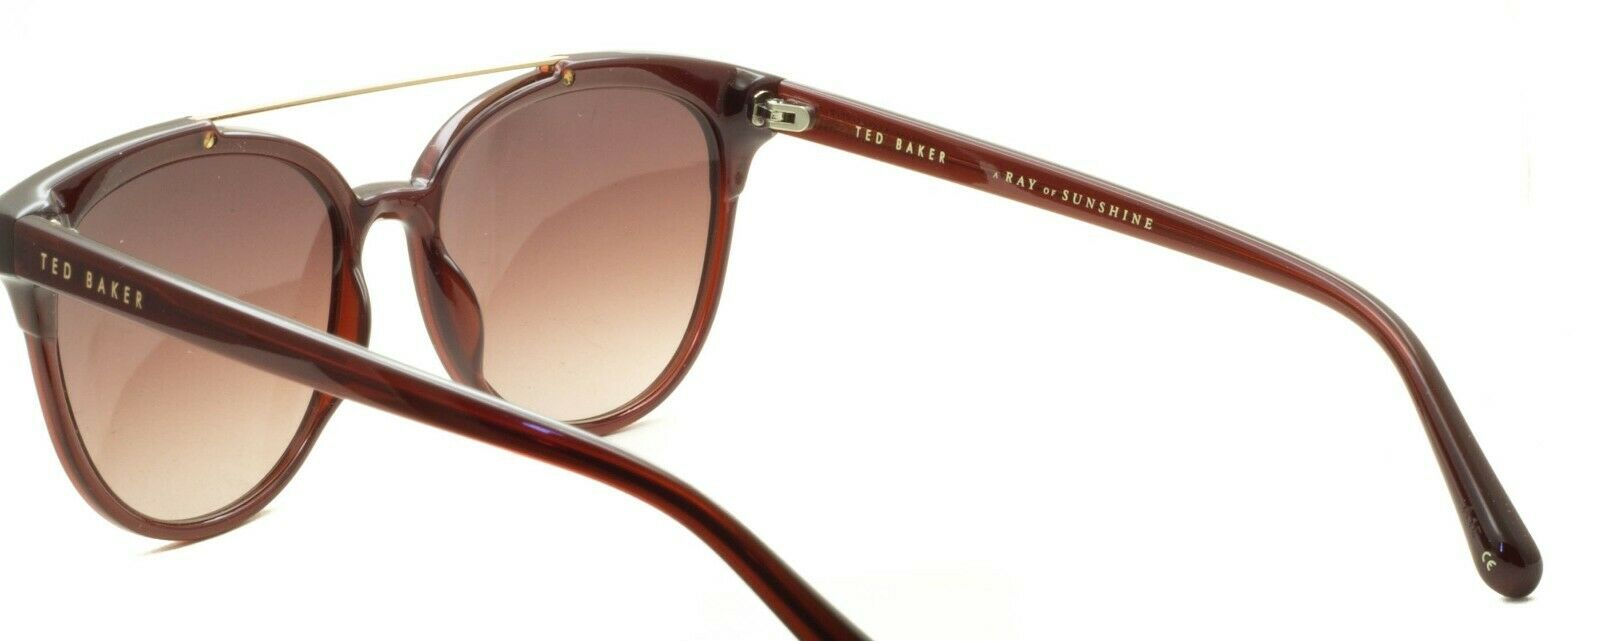 TED BAKER Solene 1539 253 54mm Sunglasses Cat 3 Shades Eyeglasses Frames - New